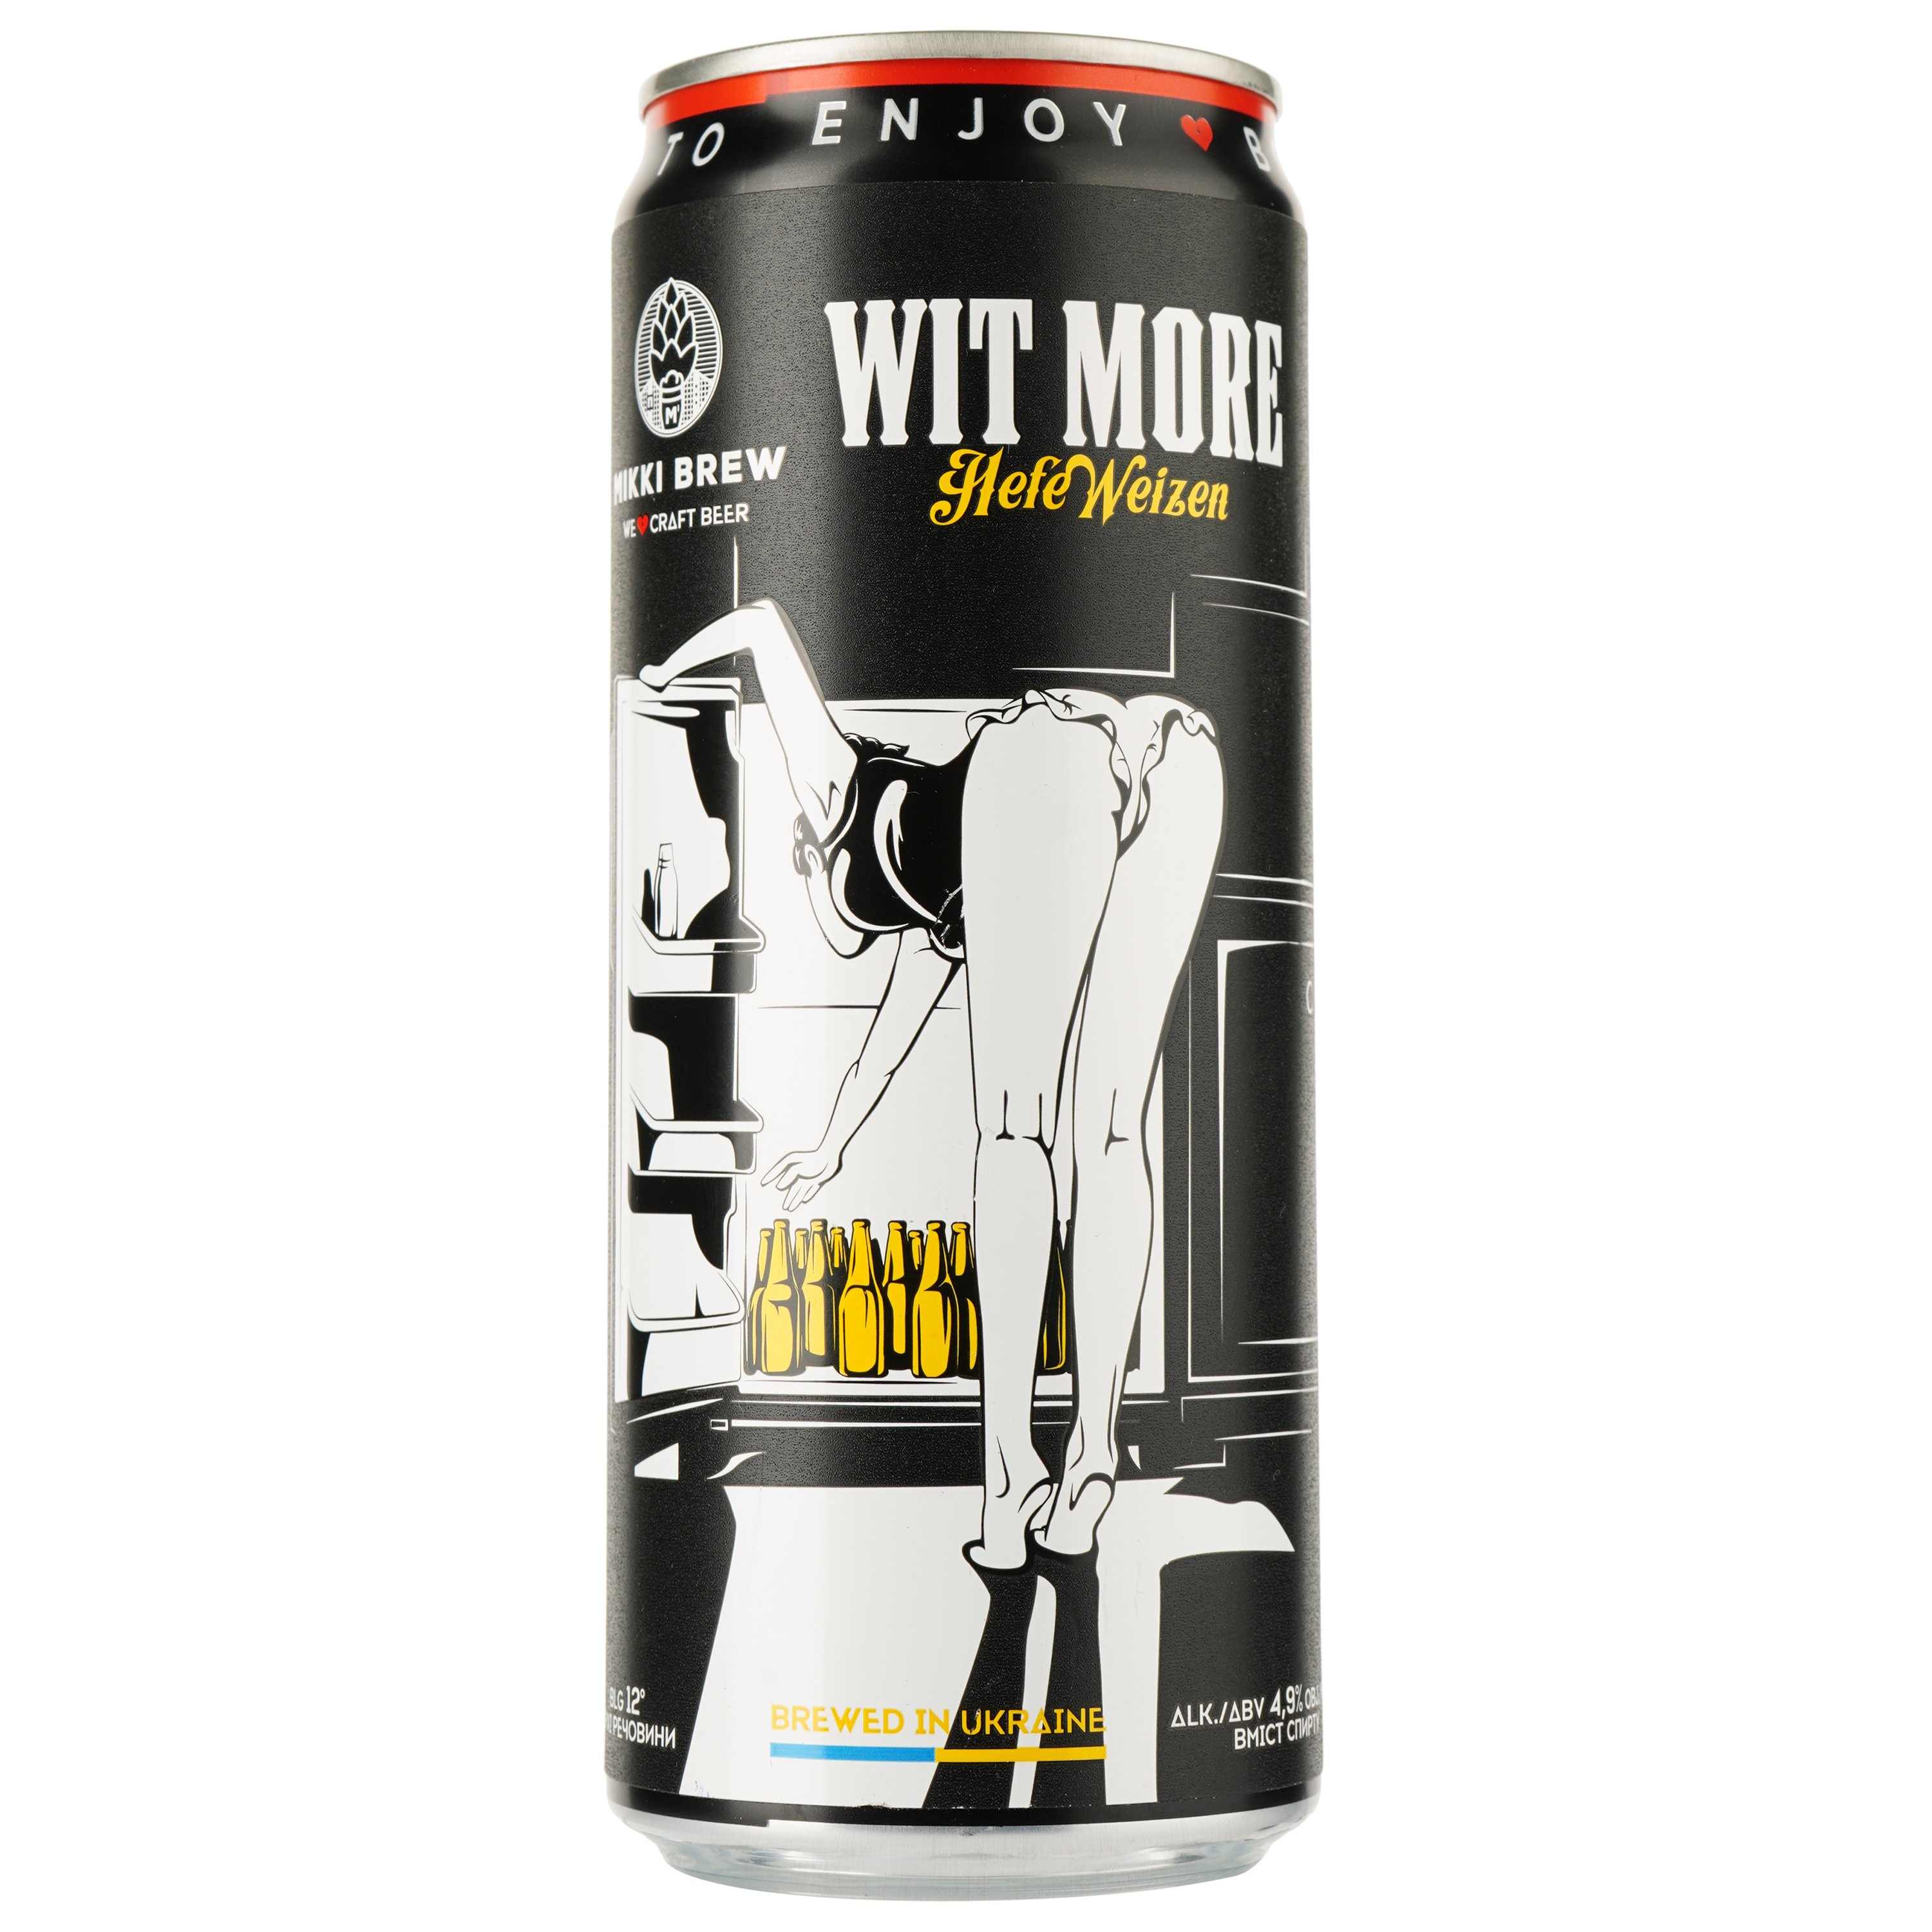 Пиво Mikki Brew Wit More, светлое, нефильтрованное, 4,9%, ж/б, 0,33 л - фото 1